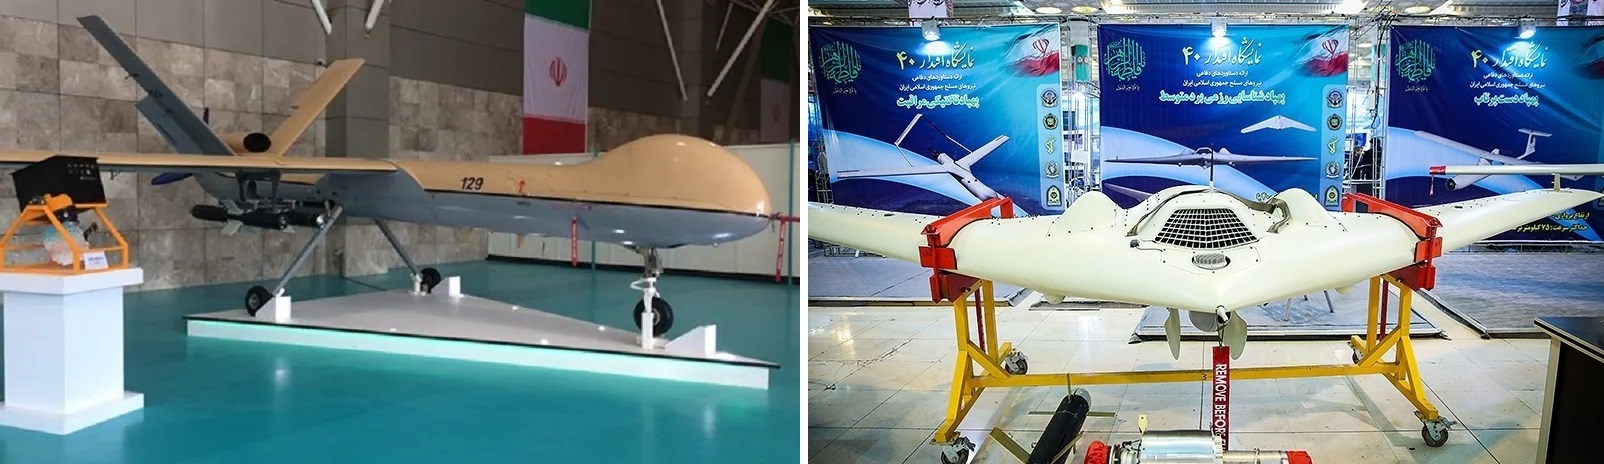 La Russia sta valutando l'acquisto di droni Shahed iraniani in grado di trasportare missili a guida di precisione